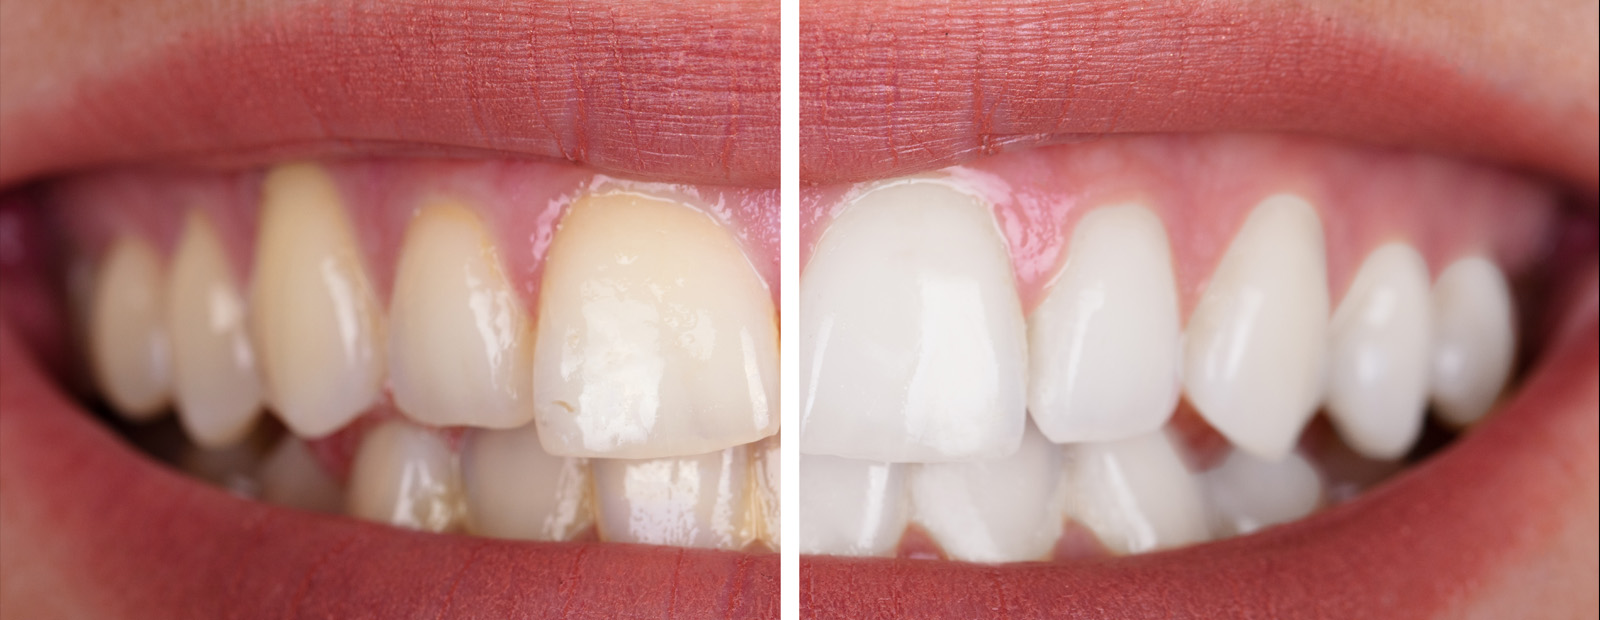 Graue verfärbung zahn Zahnverfärbung